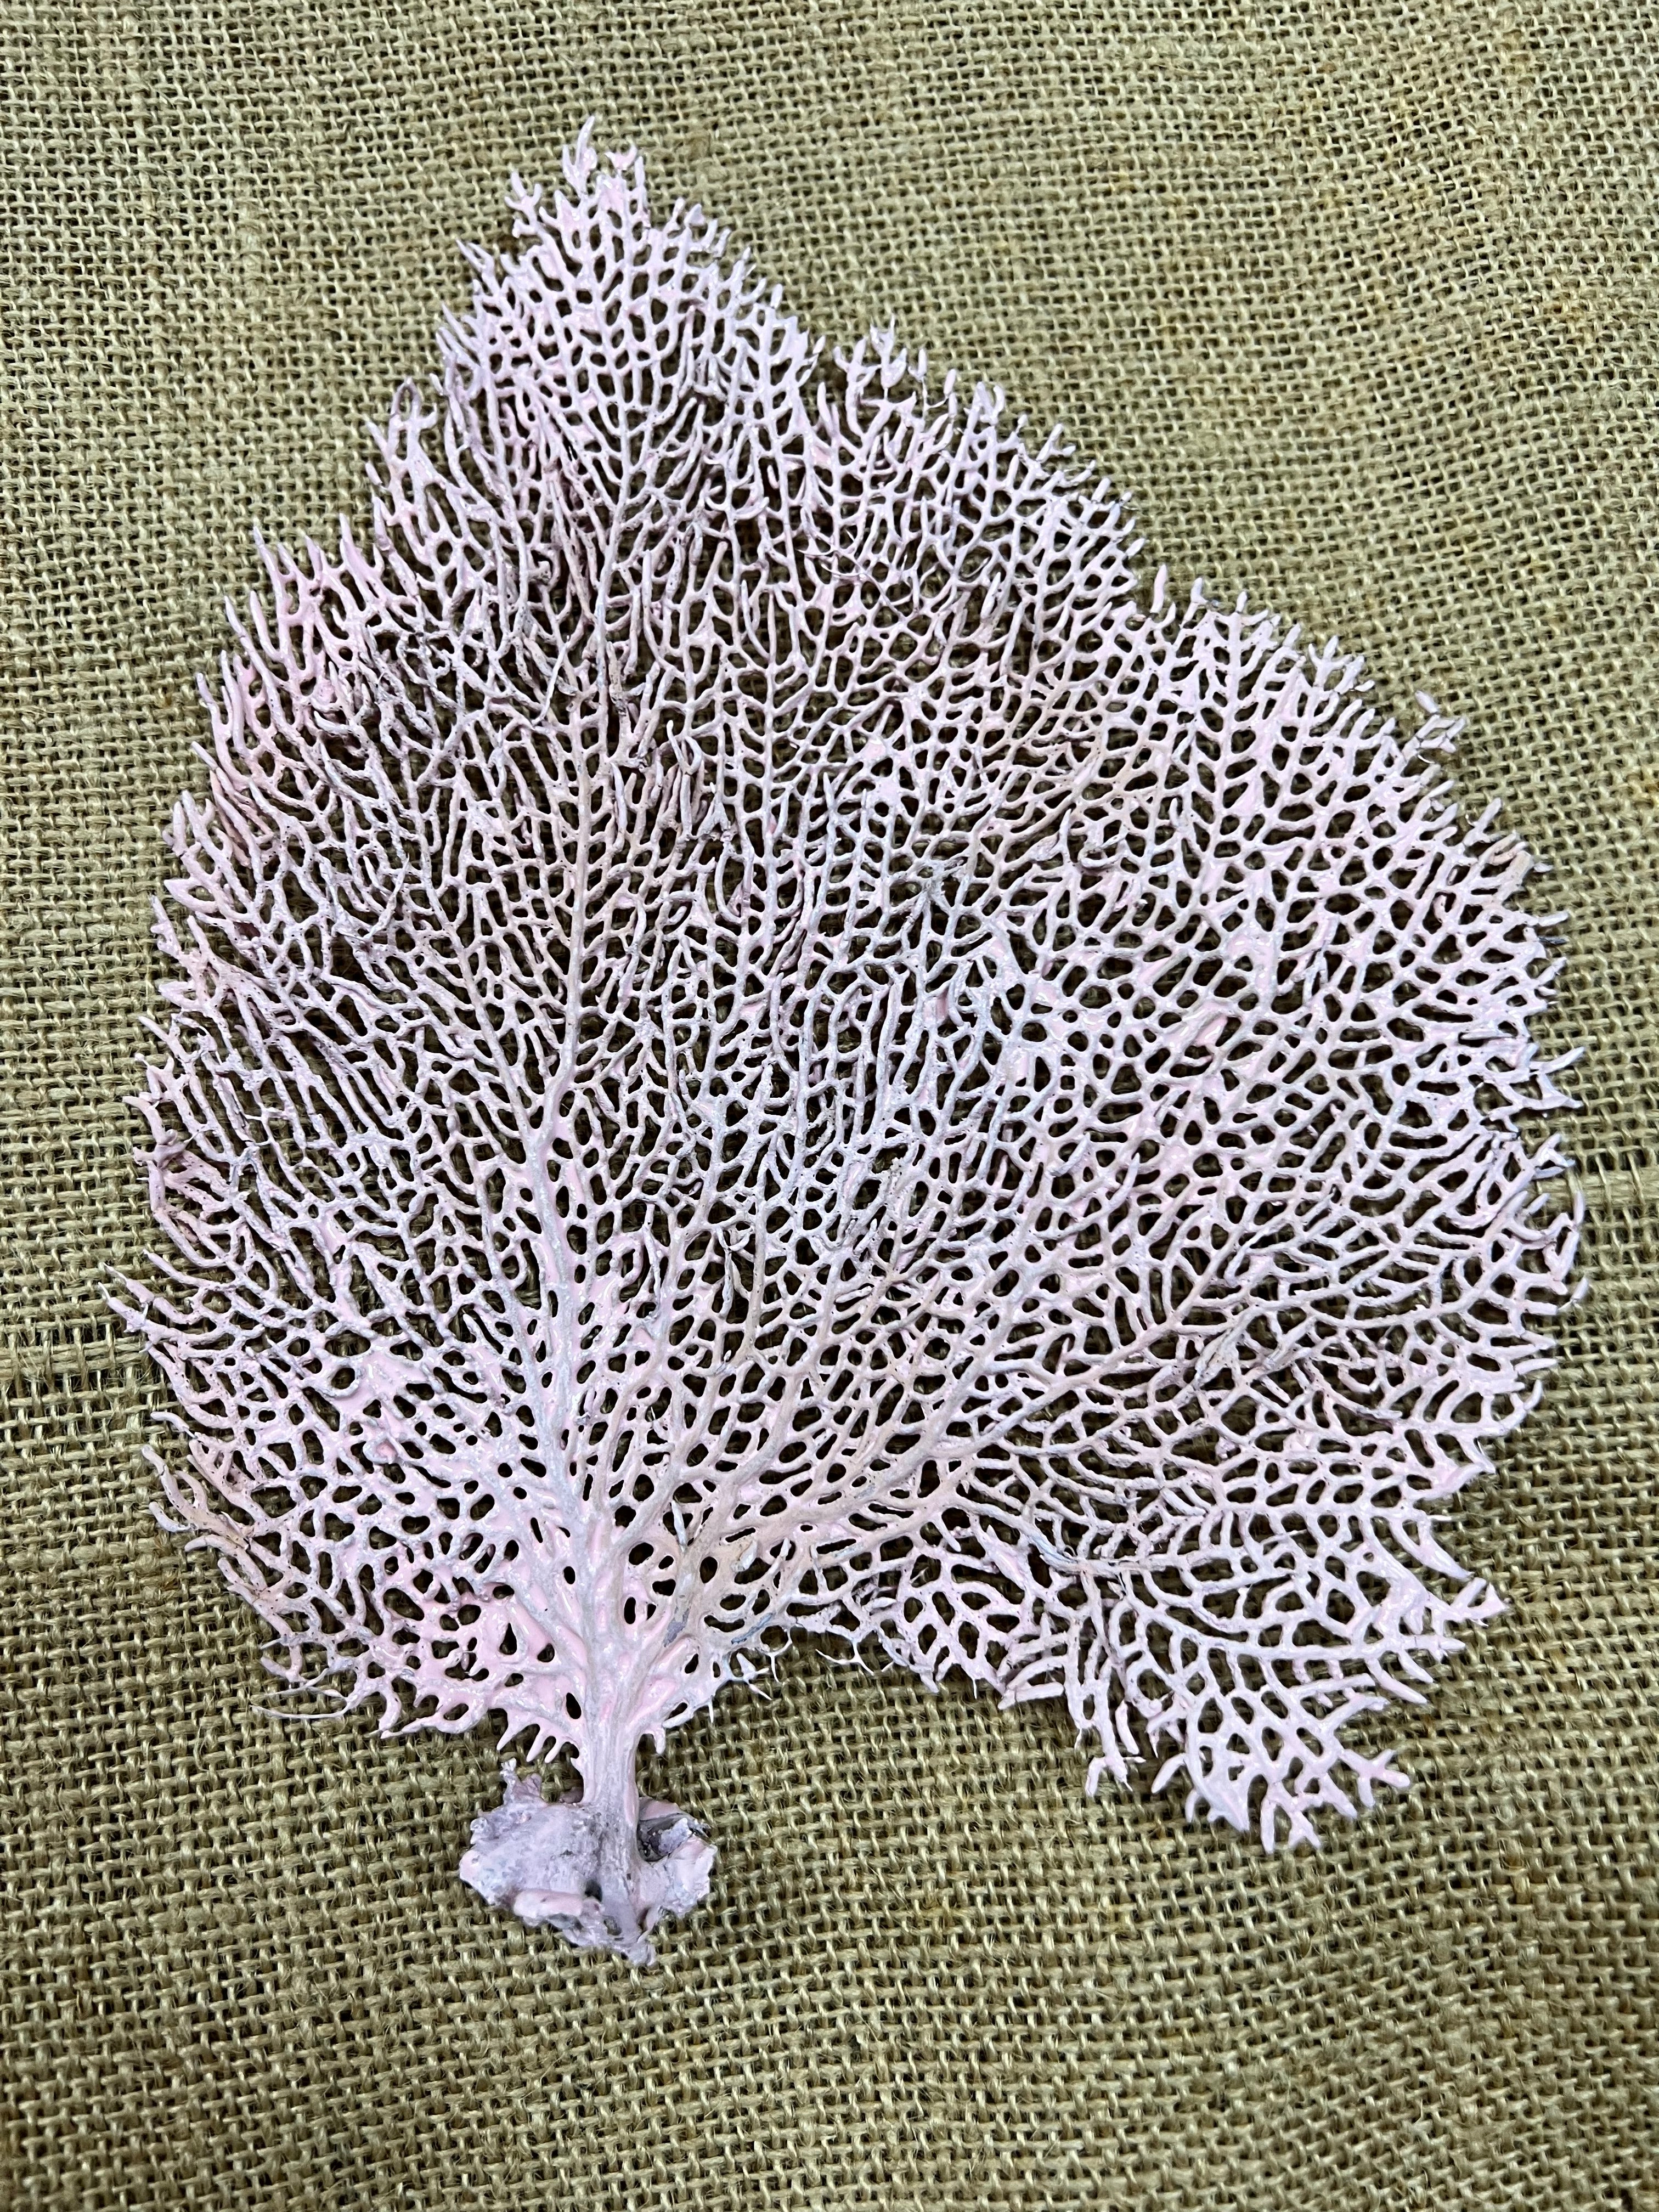 sea fan coral